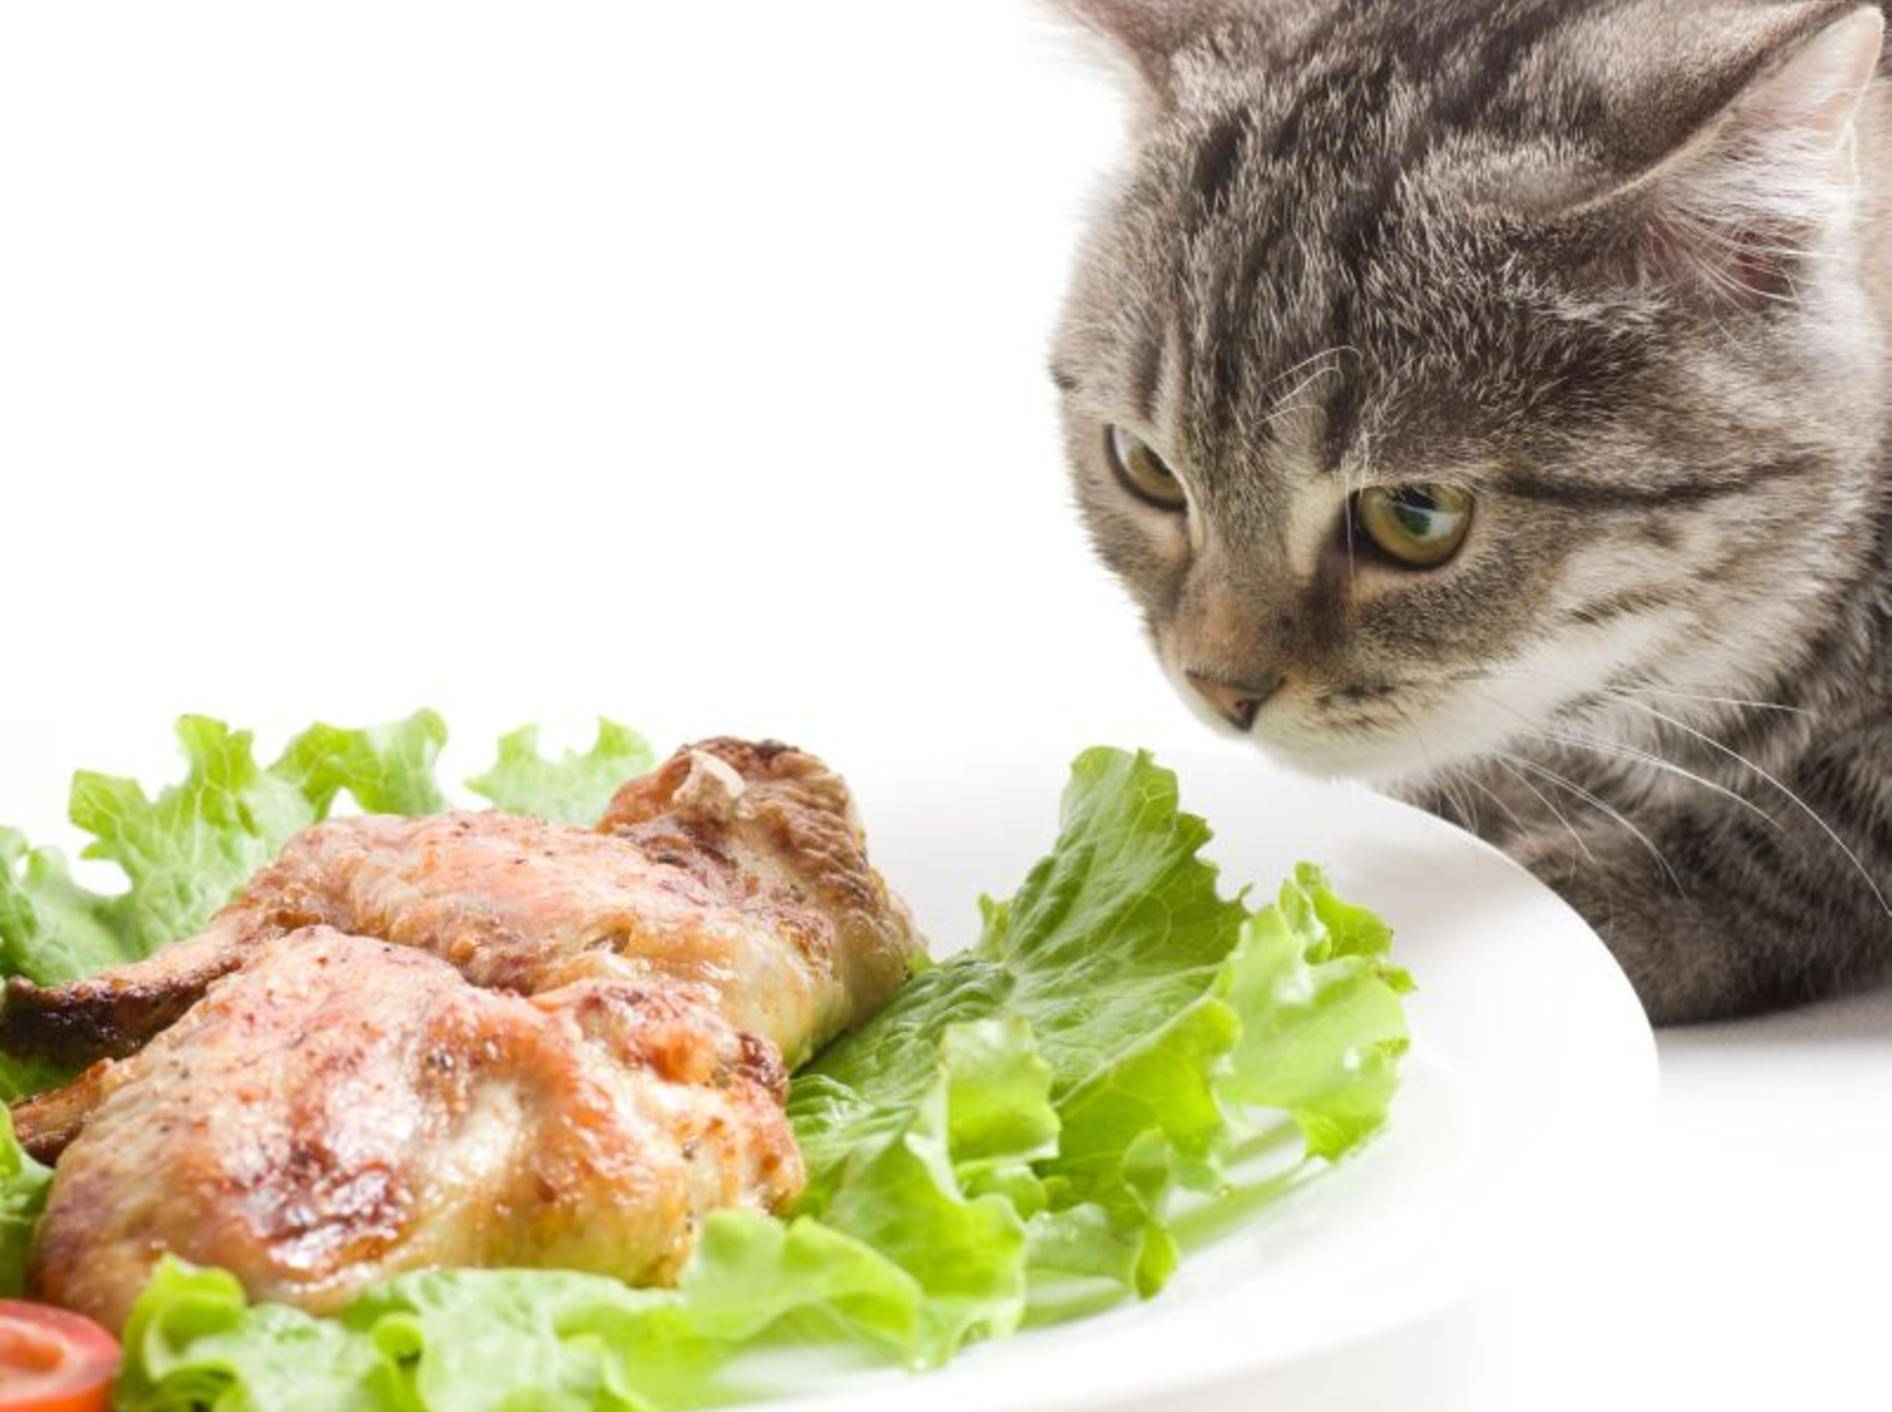 Getigerte Katze mit Salat und Fleisch